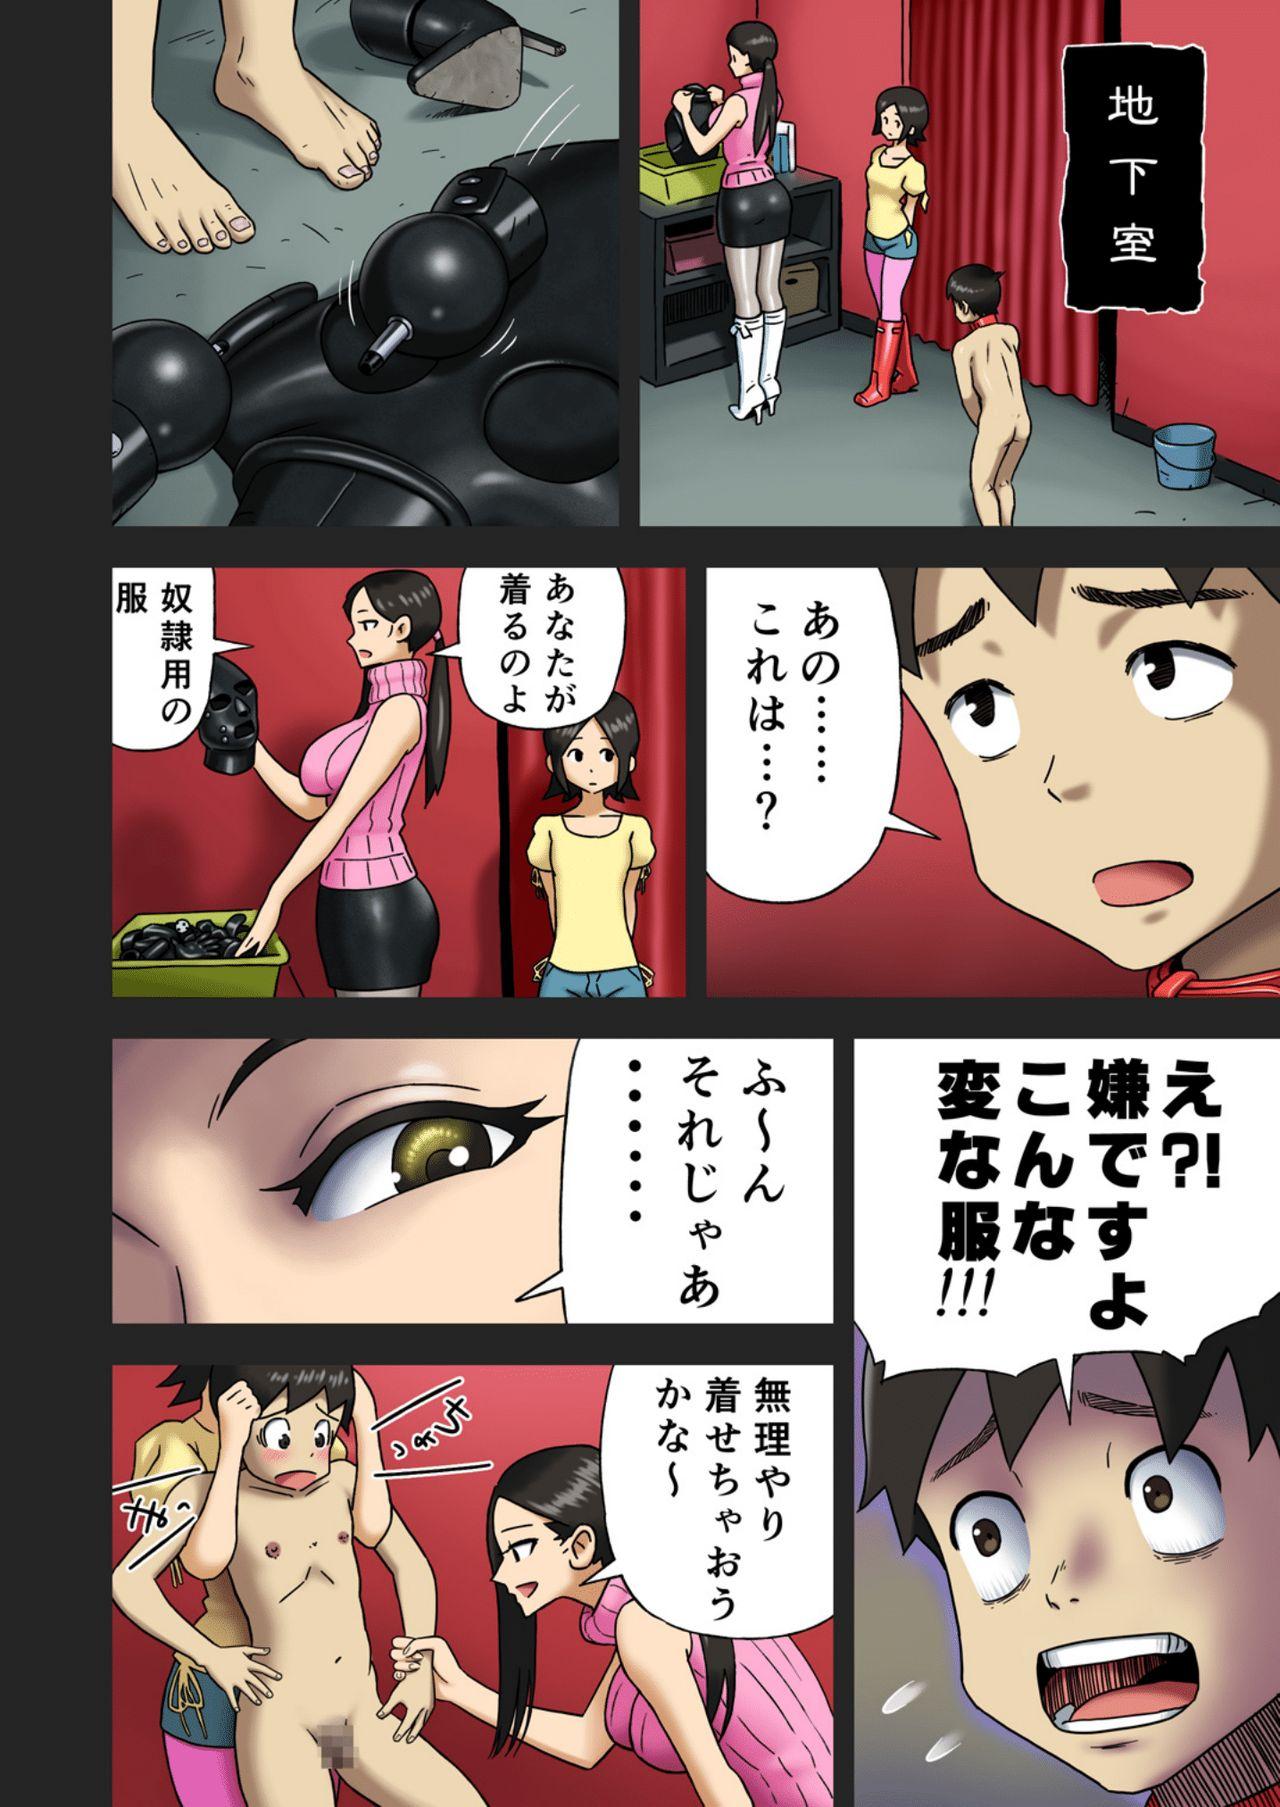 [Enka Boots] Enka Boots no Manga 1 - Juku no Sensei ga Joou-sama V4.0 12